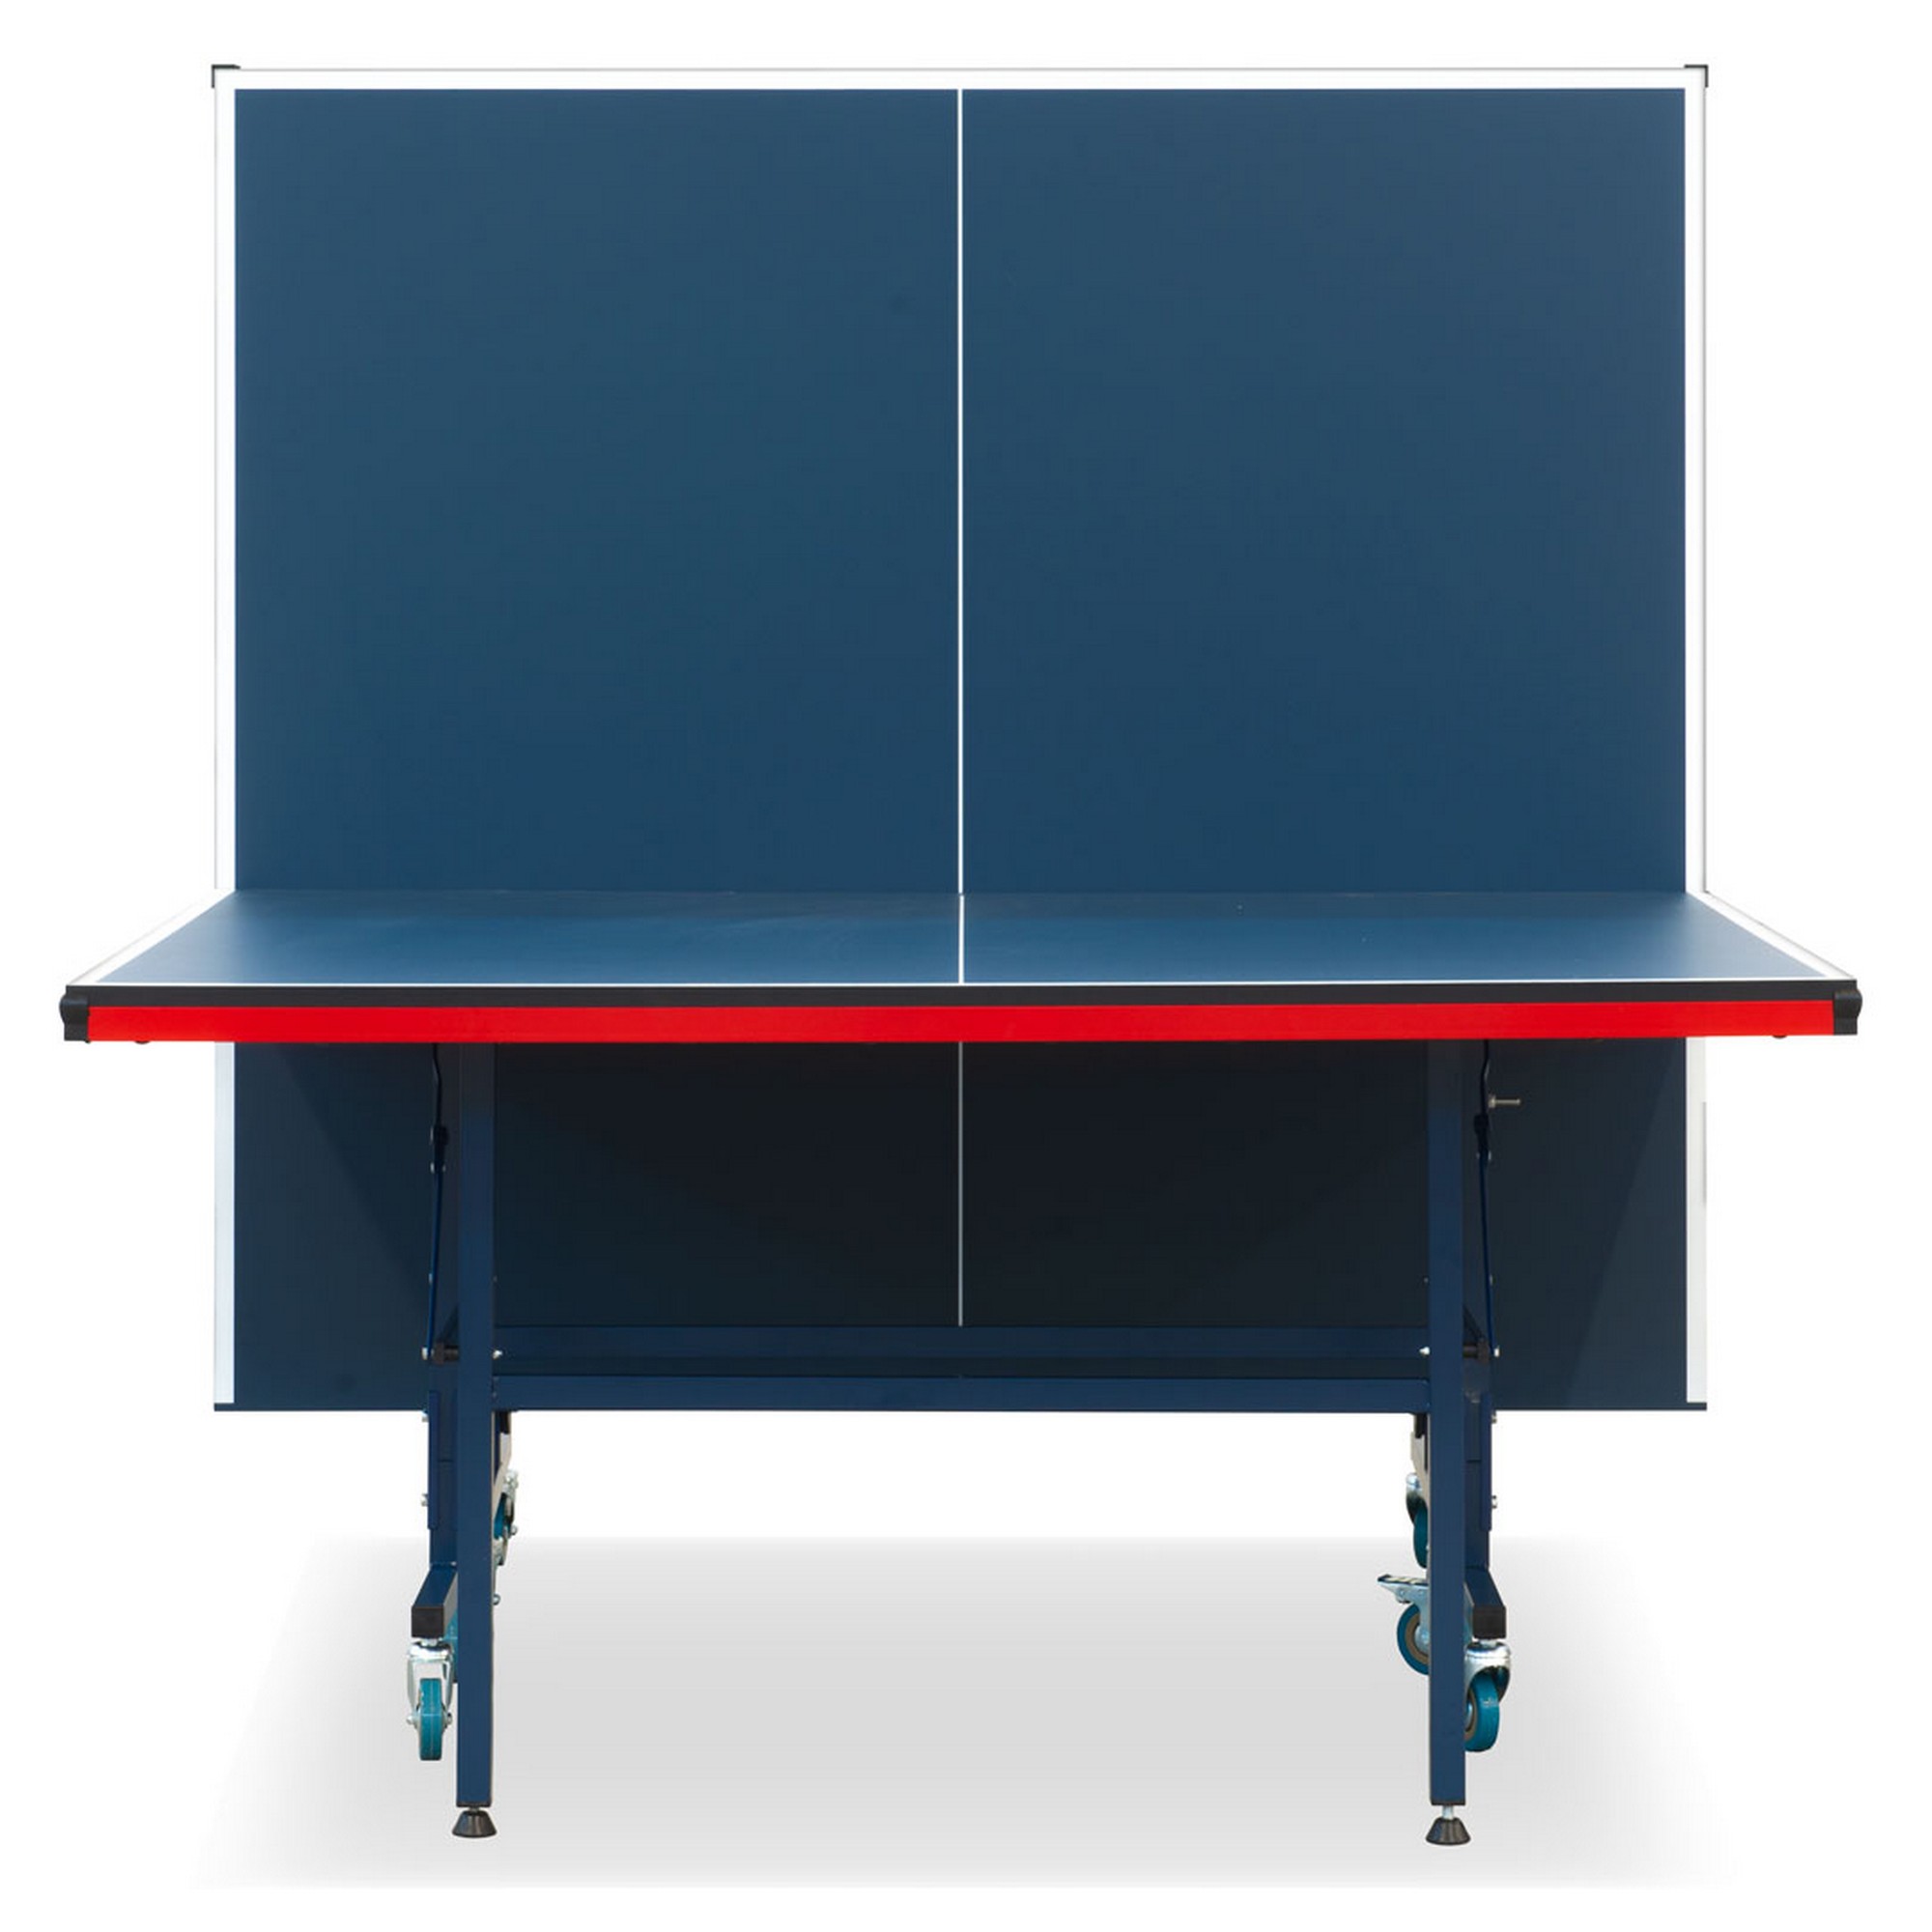 Теннисный стол складной для помещений S-280 Winner 51.280.02.0 2000_2000